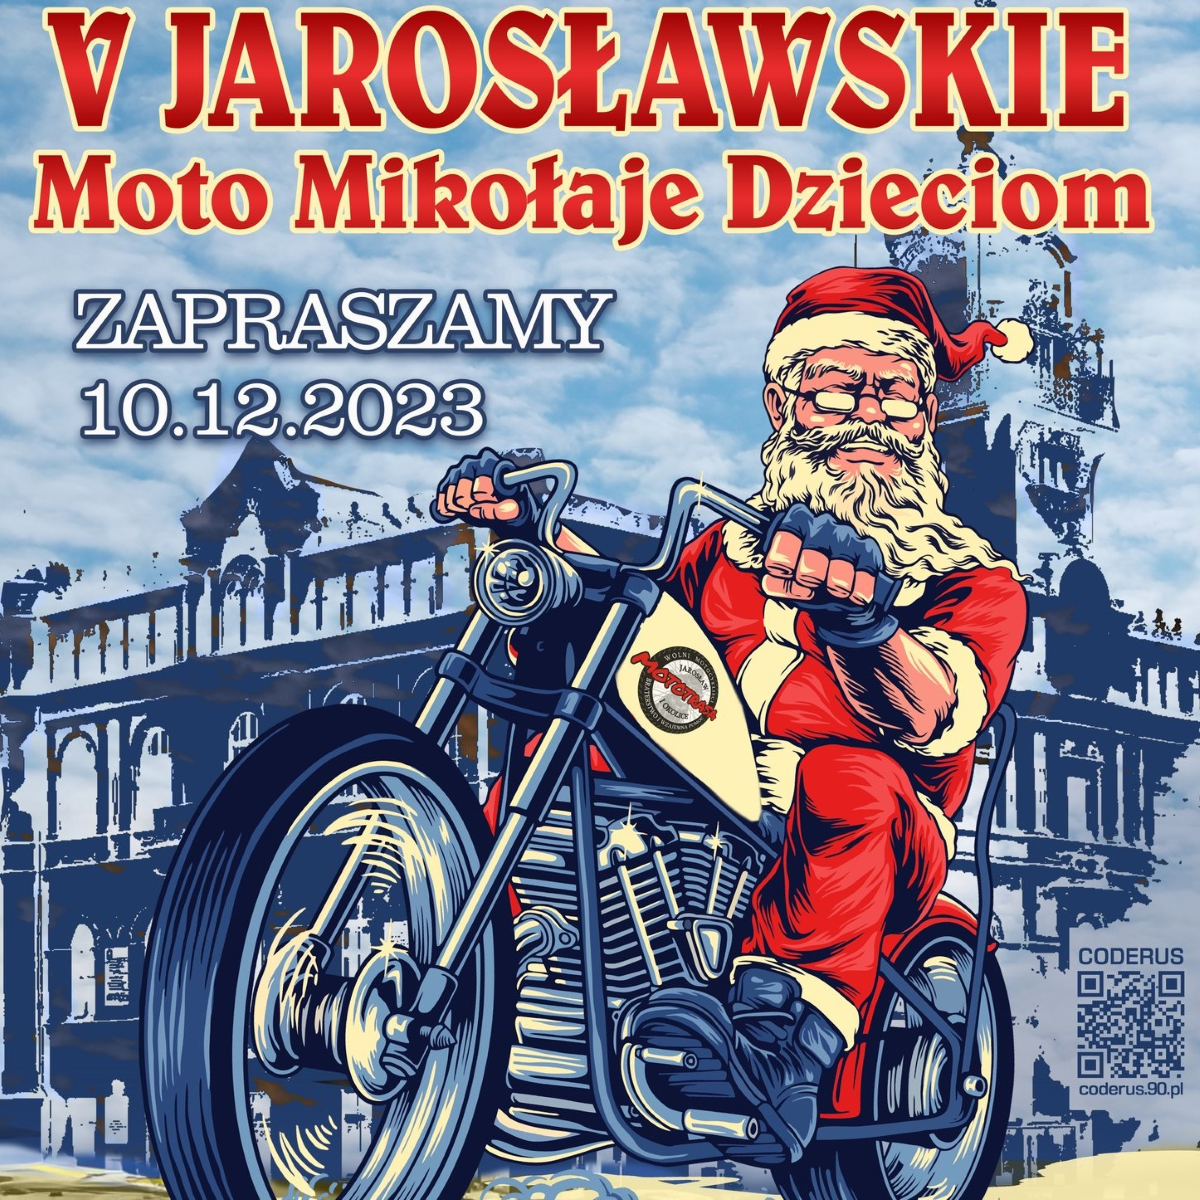 V Jarosławskie MotoMikołaje 2023